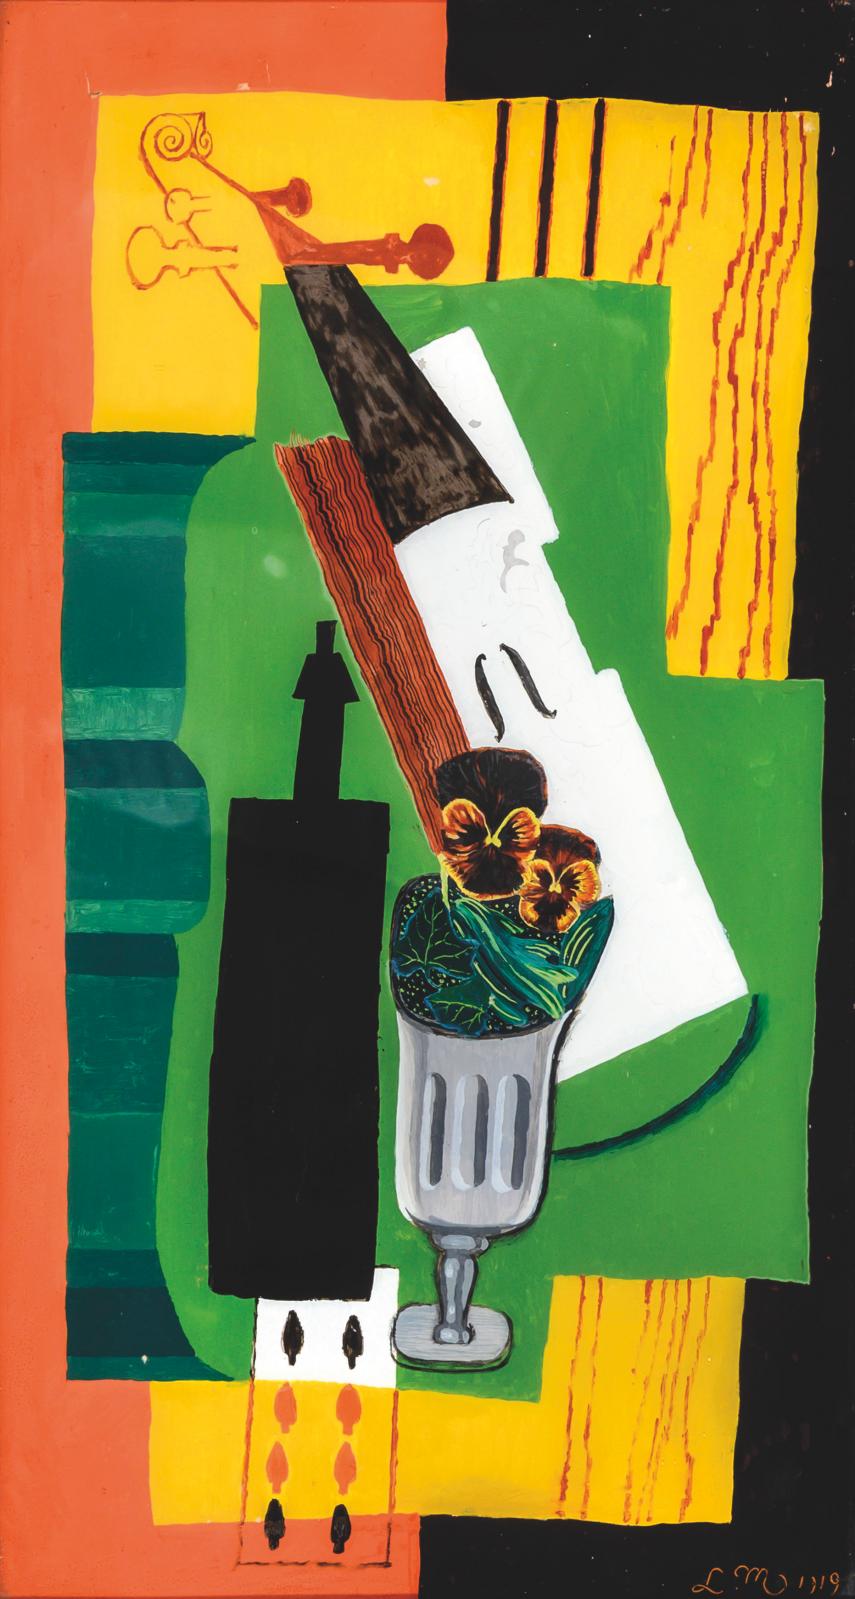 Louis Marcoussis (1883-1941), Violon, bouteille, fleurs dans un verre et huit de pique, 1919, huile sur verre, monogrammée et datée en bas à droite, 4